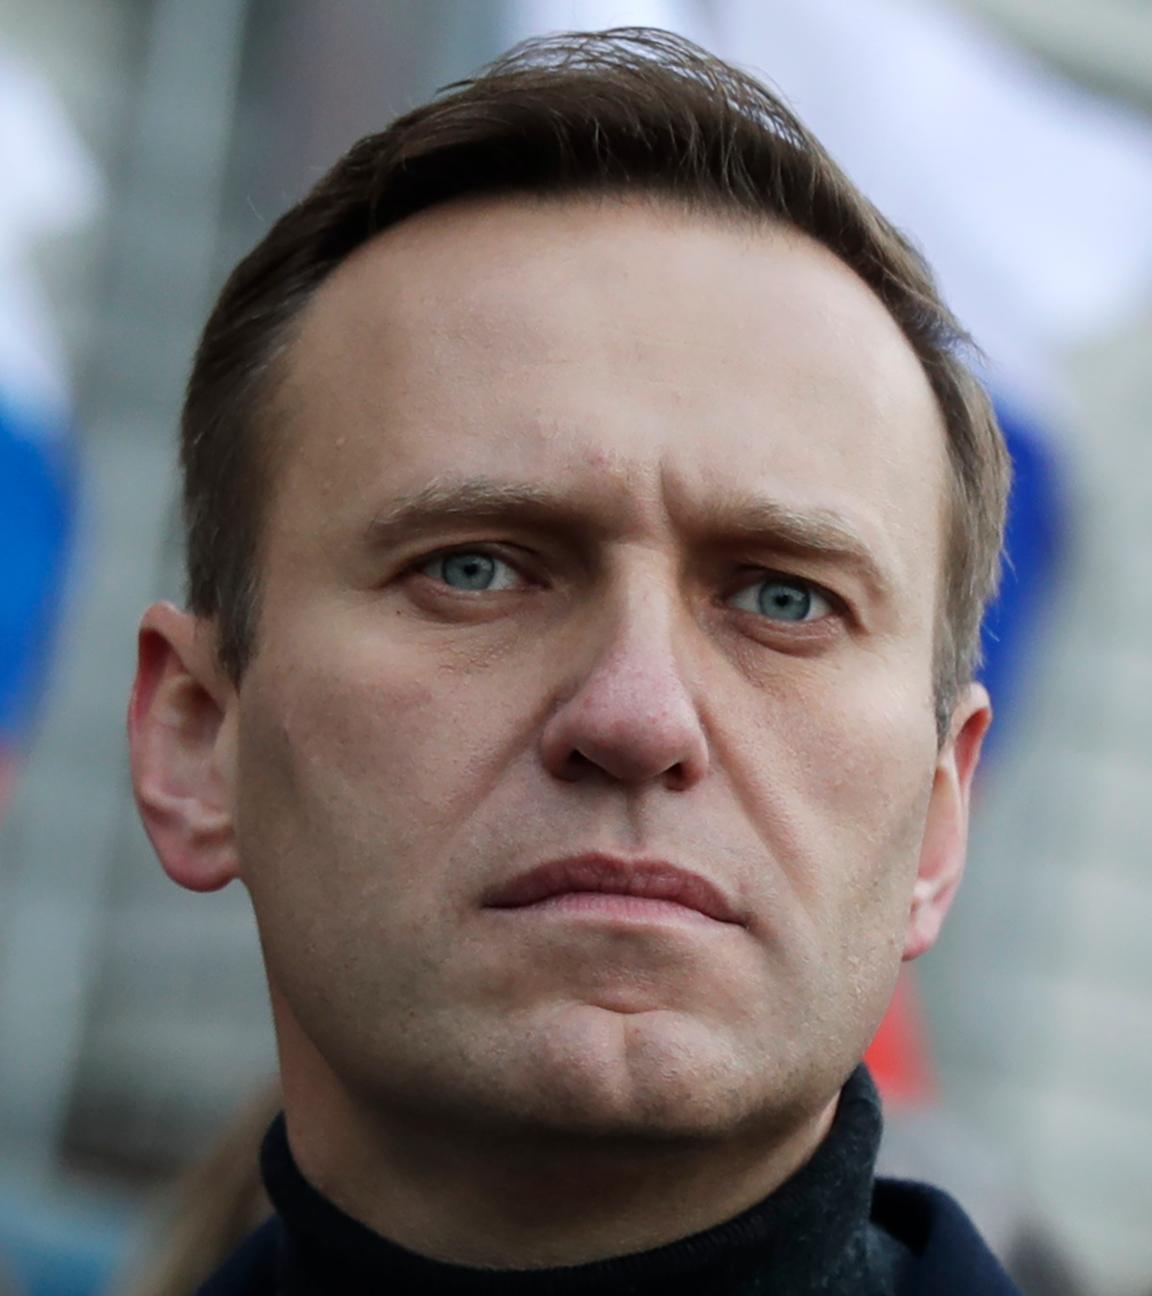 Der russische Oppositionsaktivist Alexej Nawalny nimmt im. Februar 2020 an einer Demonstration in Moskau teil.